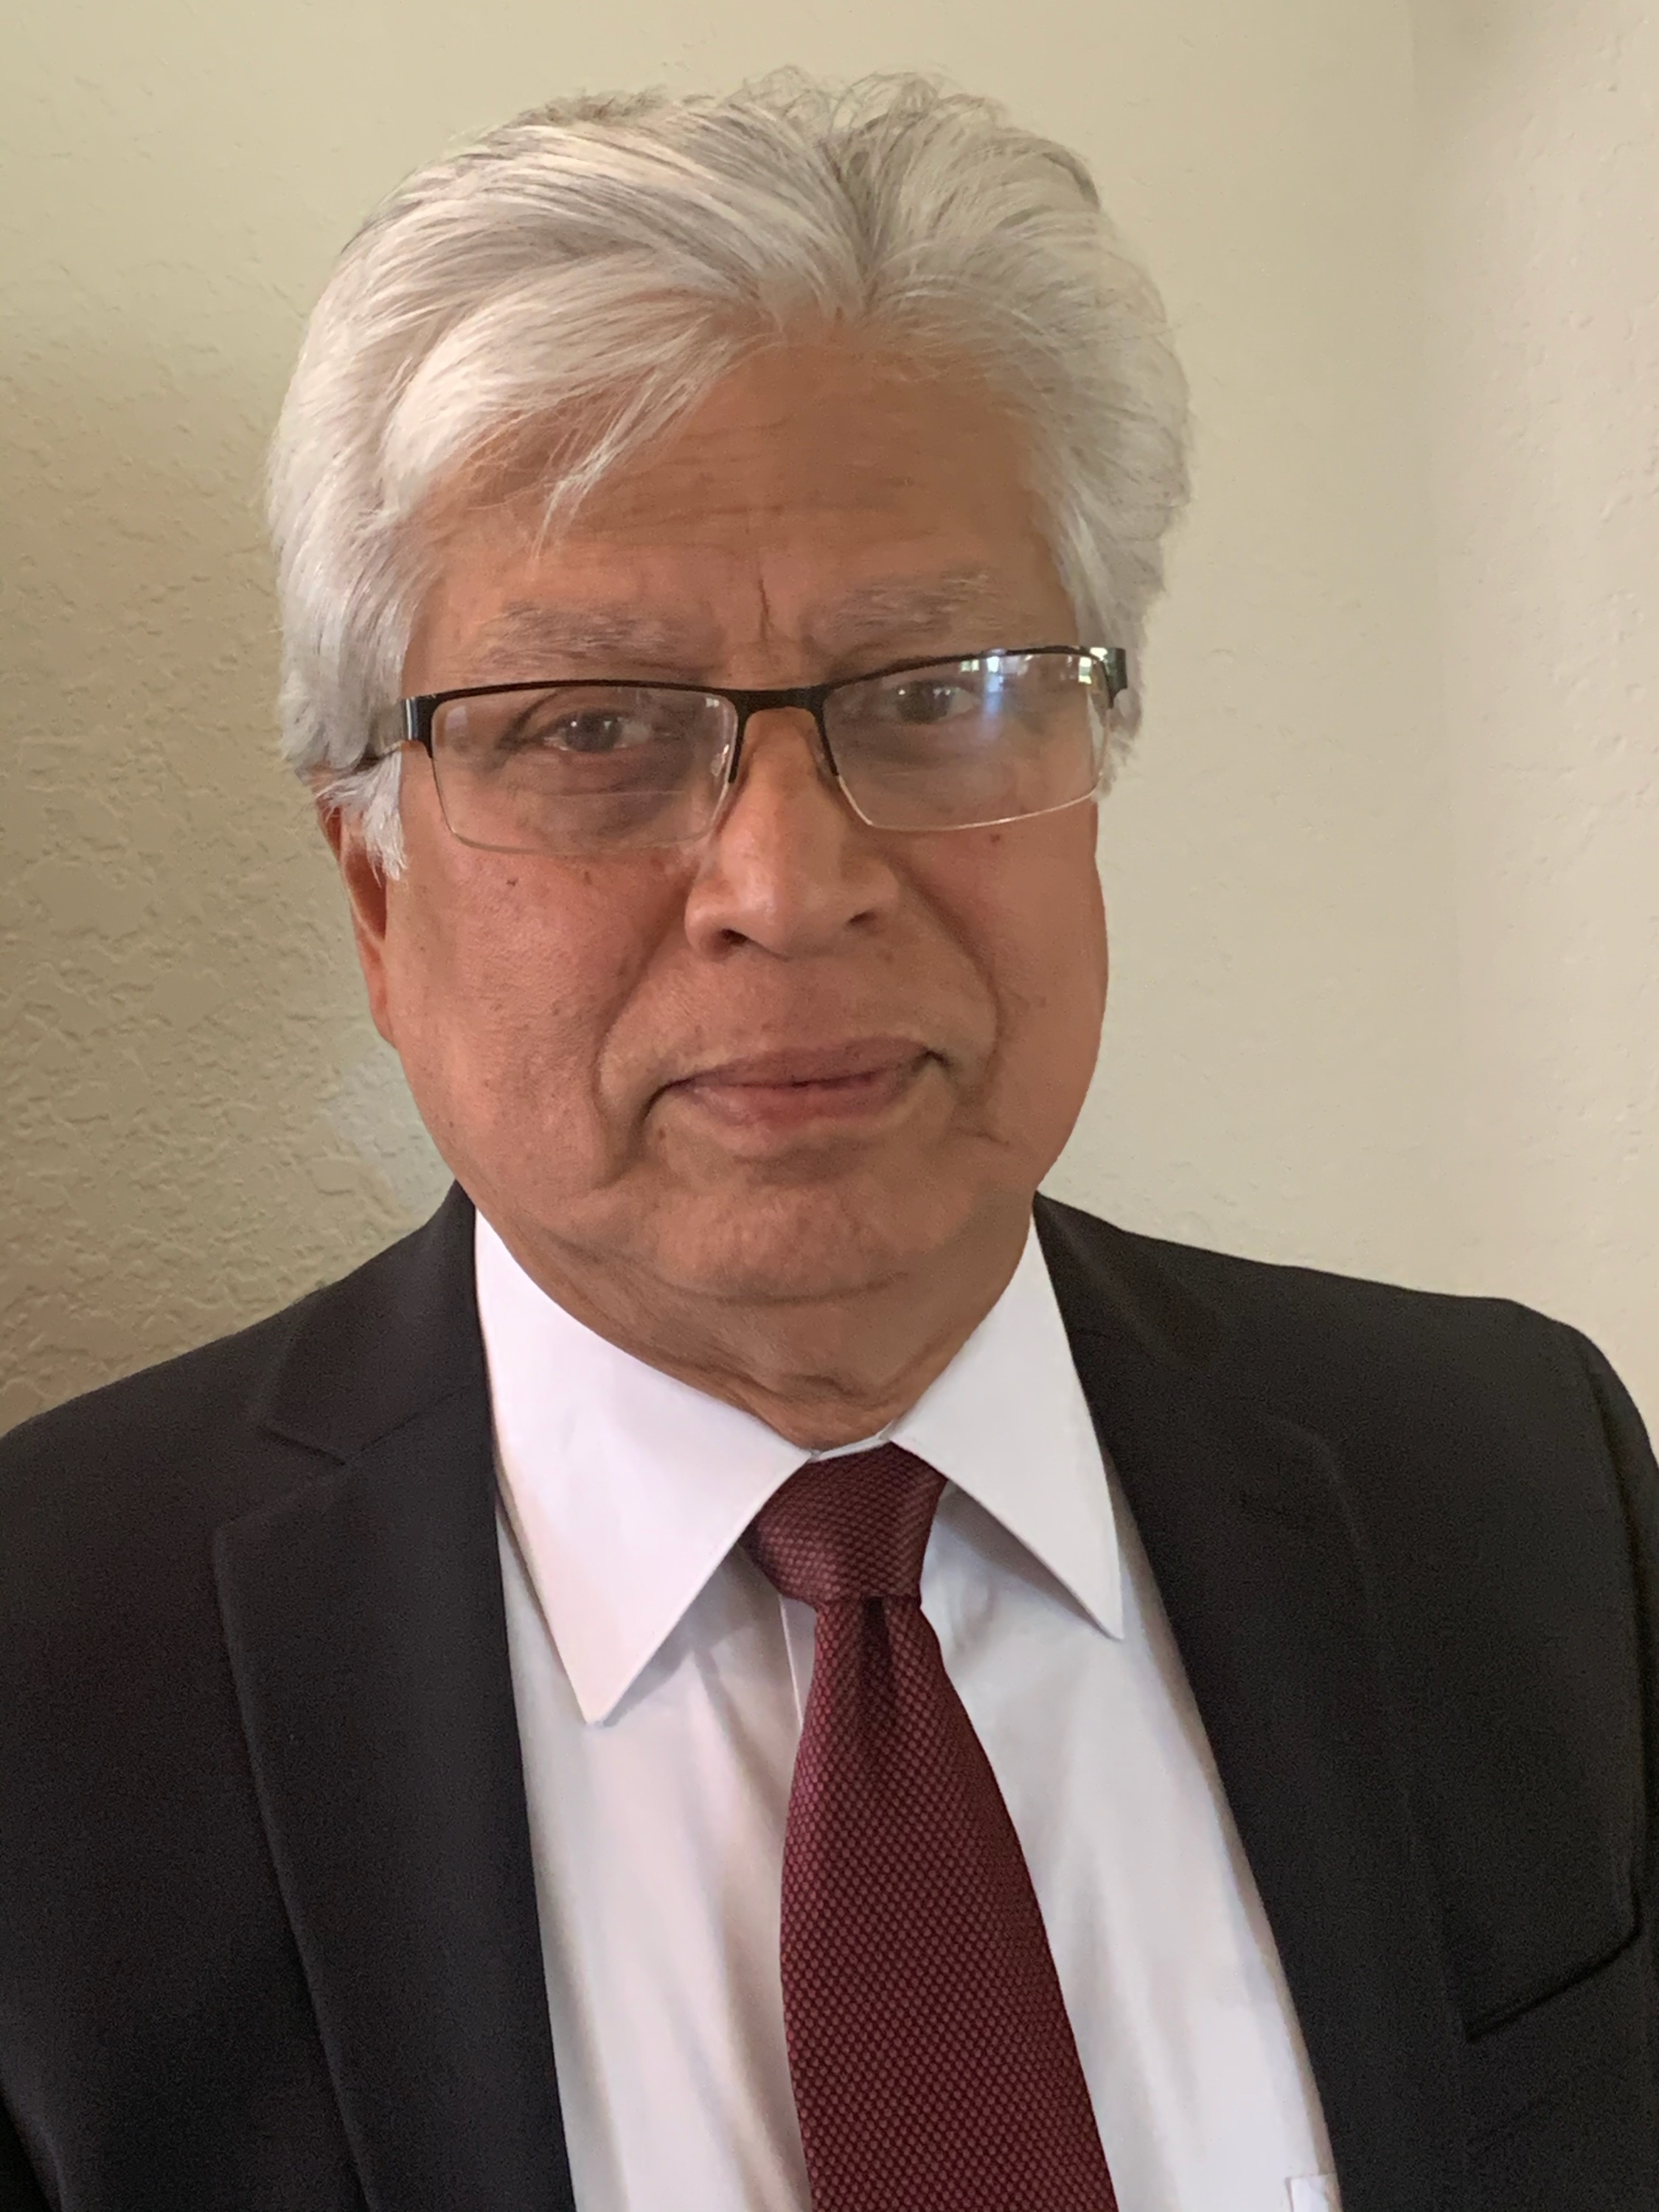 Arup Das, MD, PhD